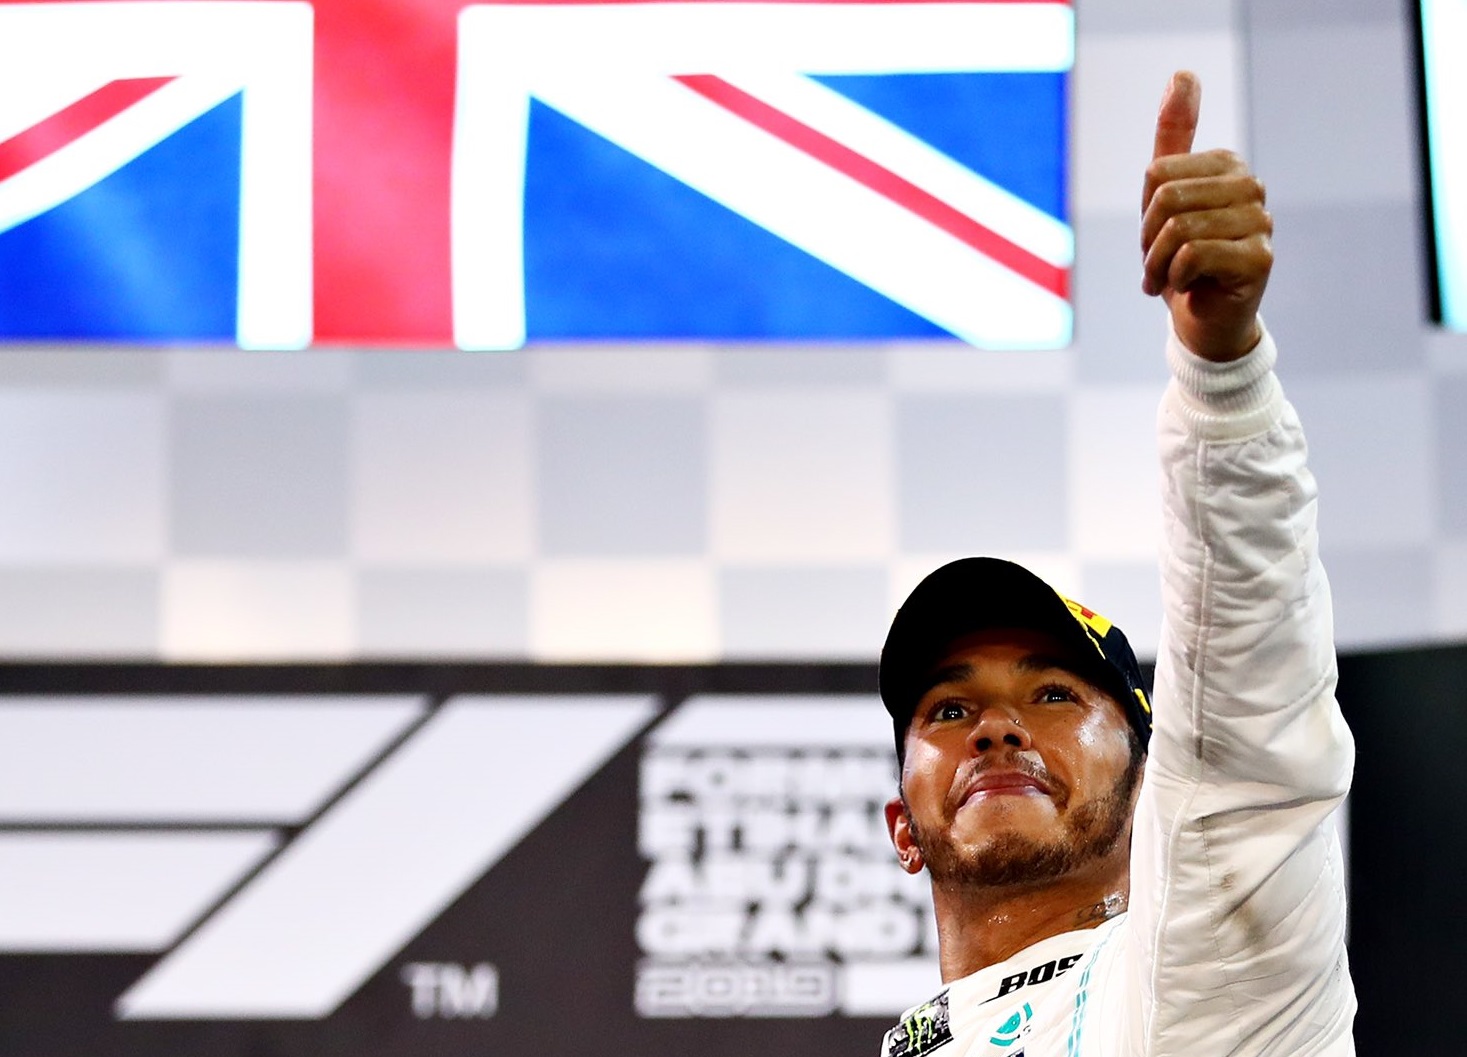 Lewis Hamilton merasa pengalaman dan kemampuan alaminya akan membantunya tetap mendominasi F1 GP 2020. (Foto: Twitter/@LewisHamilton)